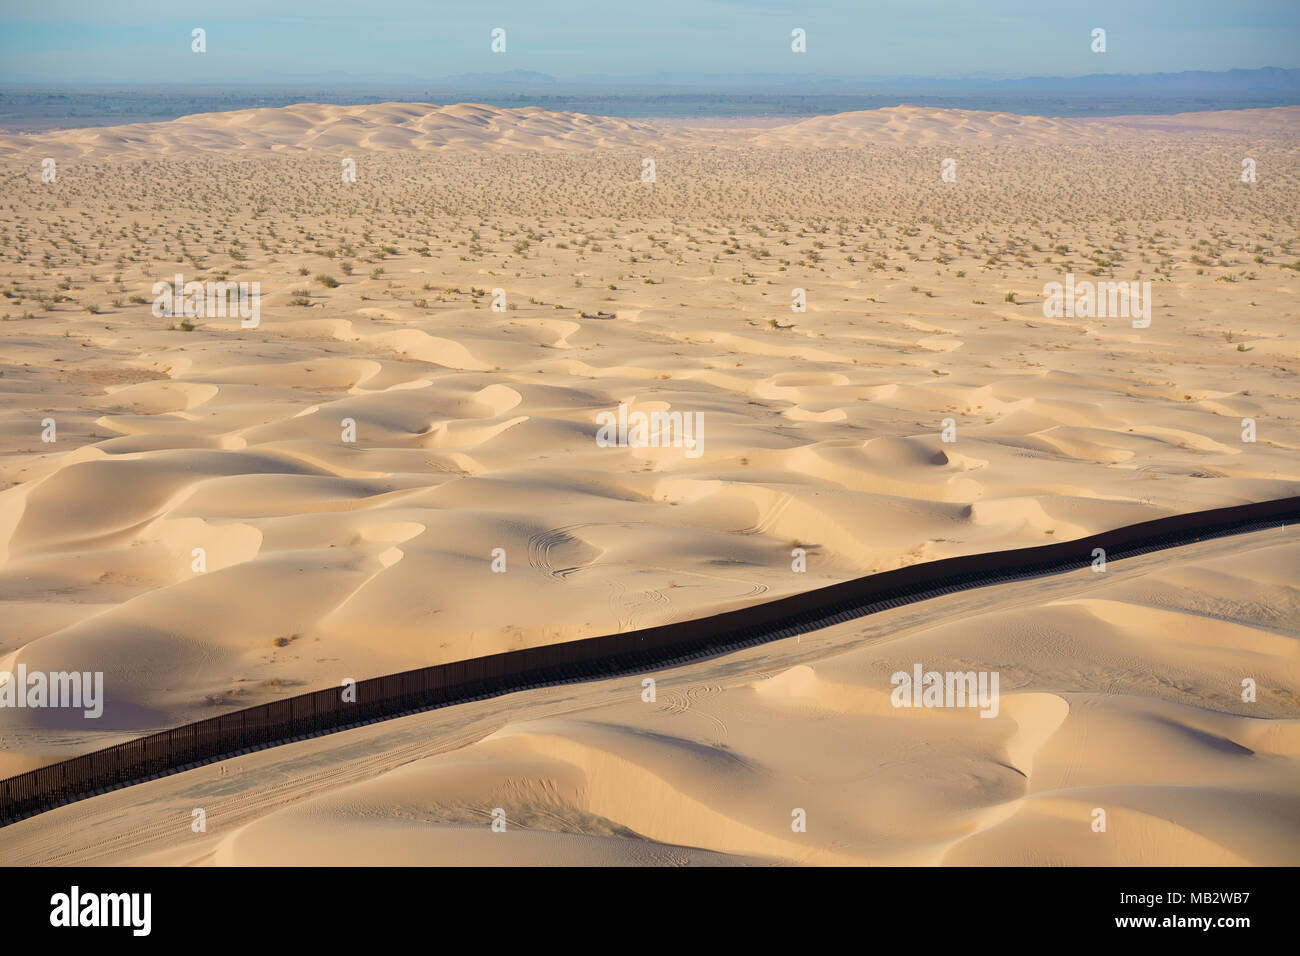 VUE AÉRIENNE. Frontière internationale entre le Mexique (derrière le mur) et les États-Unis. Dunes d'Algodones, désert de Sonoran, Basse-Californie, Mexique. Banque D'Images